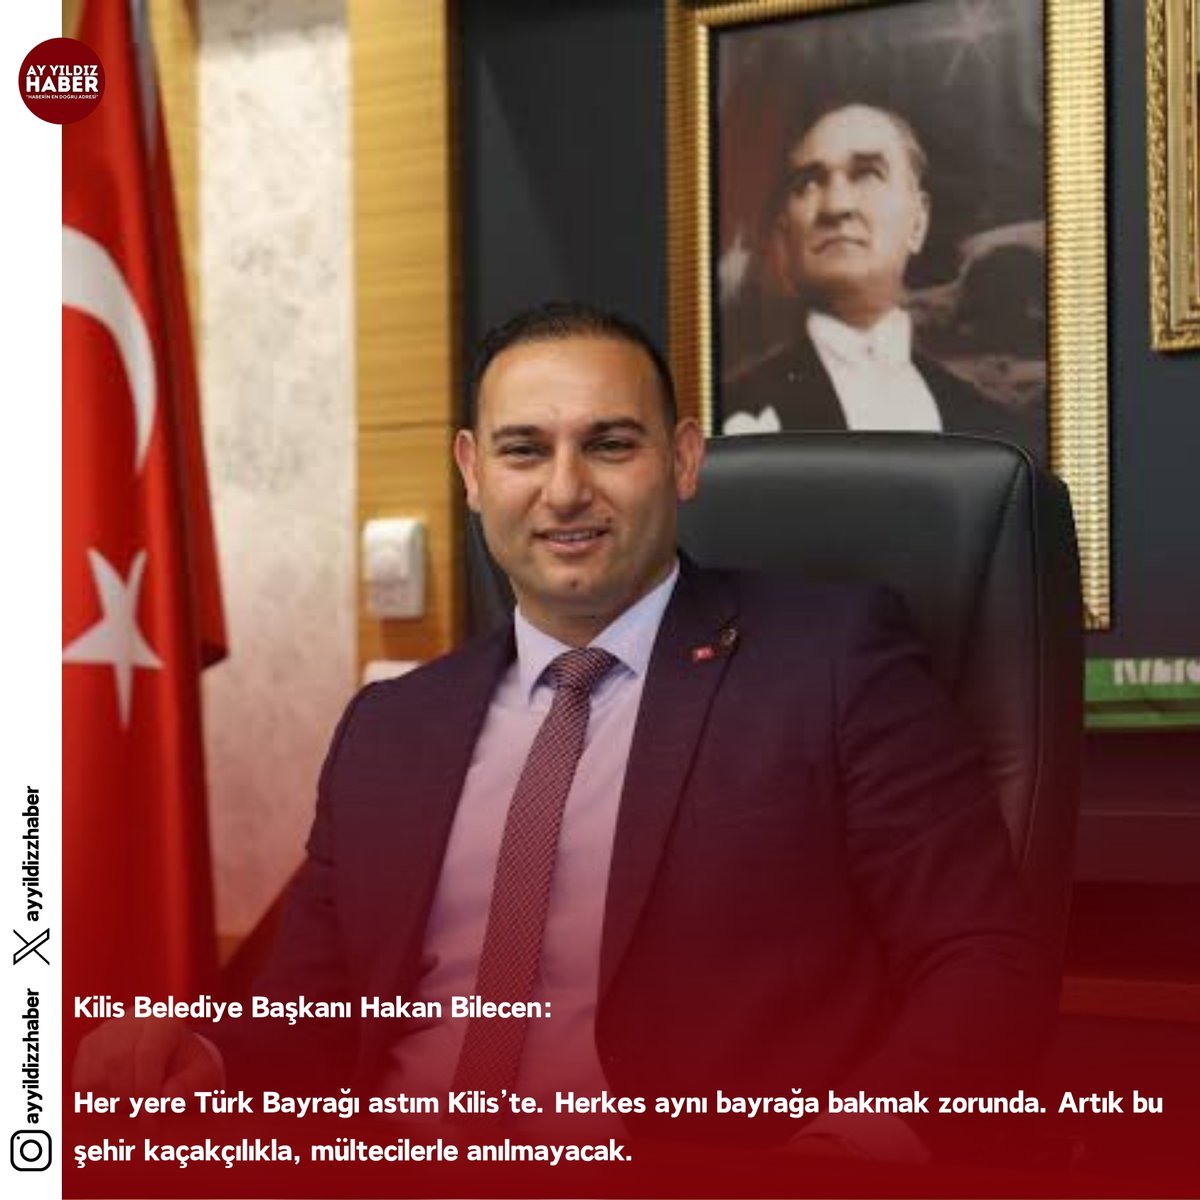 Kilis Belediye Başkanı Hakan Bilecen:

Her yere Türk Bayrağı astım Kilis’te. Herkes aynı bayrağa bakmak zorunda. Artık bu şehir kaçakçılıkla, mültecilerle anılmayacak.

#kilis #türkbayrağı